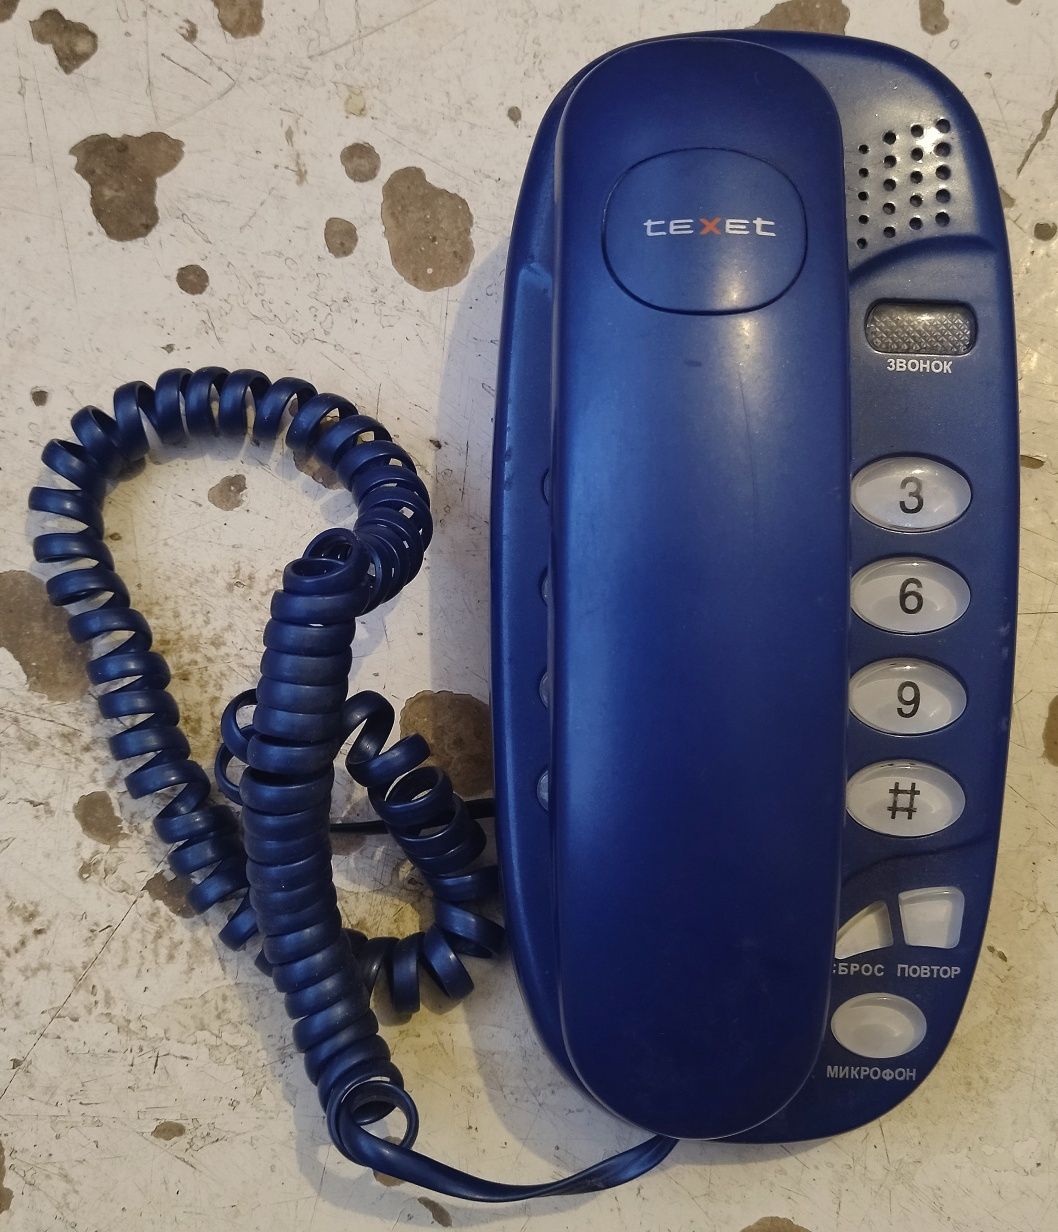 Домашний телефон фирмы teXet TX-229